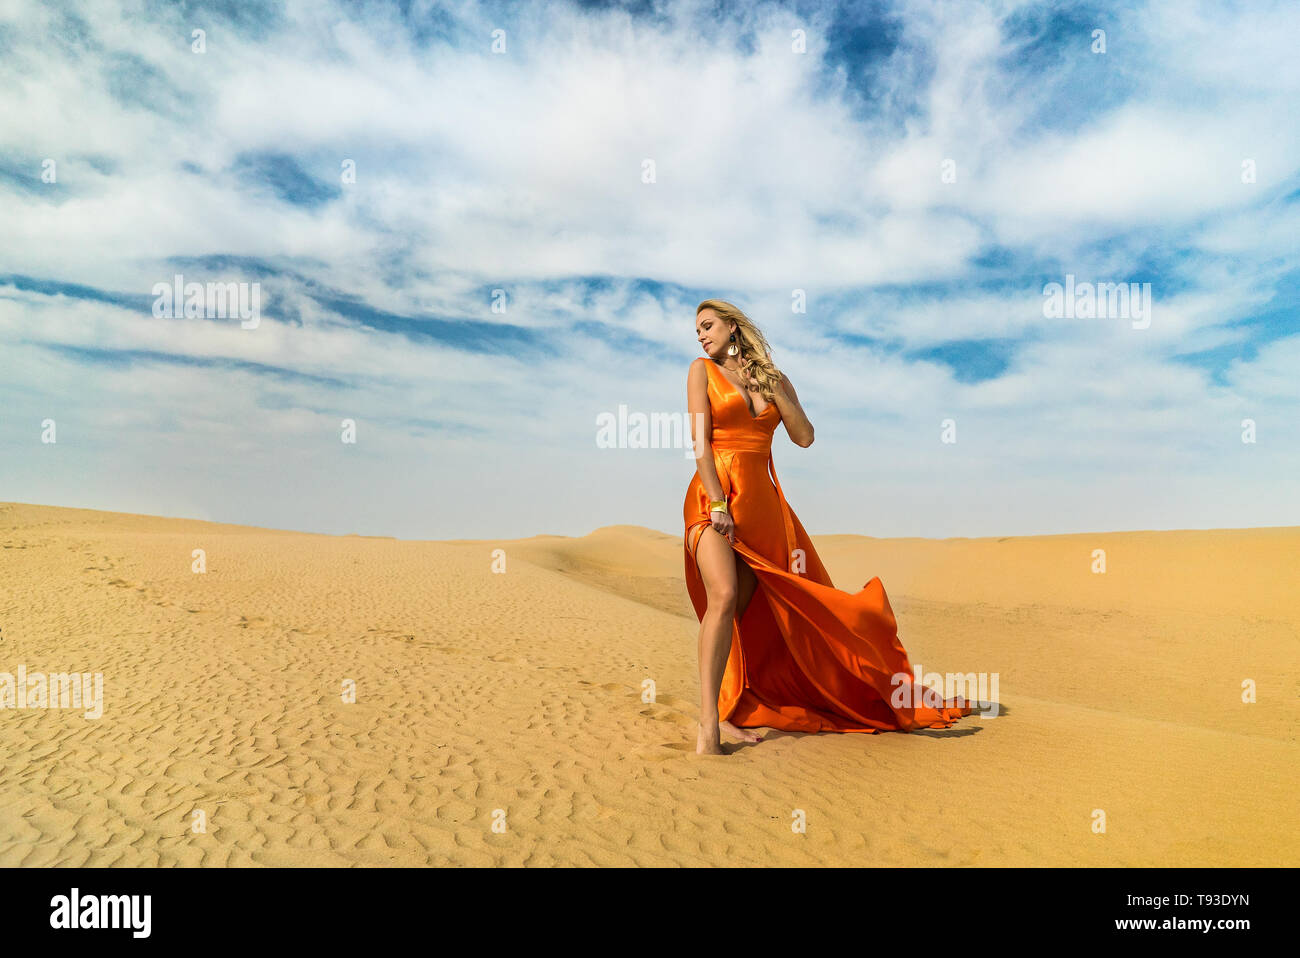 Mädchen Spaziergänge auf Wüste. Schöne Frau ist Wandern, Staing auf Sand oder Dune, berührt, zeigt ihre Beine. Blond sexy Lady in Kleid unter blauem Himmel Stockfoto